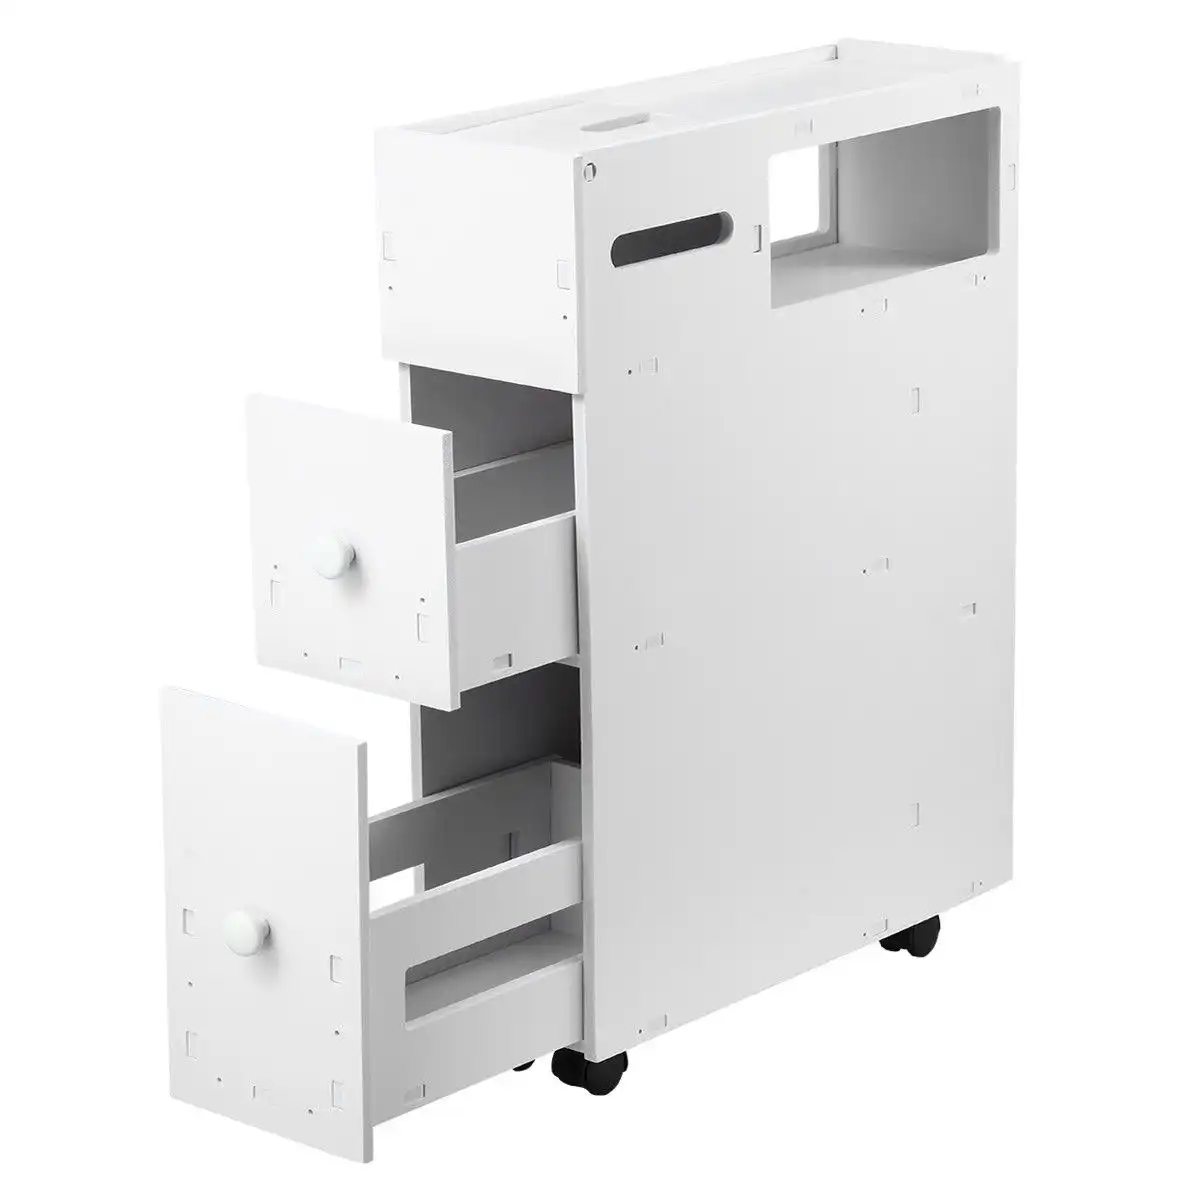 Ausway Wheeled Bathroom Cabinet Storage Drawer Organiser Toilet Caddy Tissue Box Holder